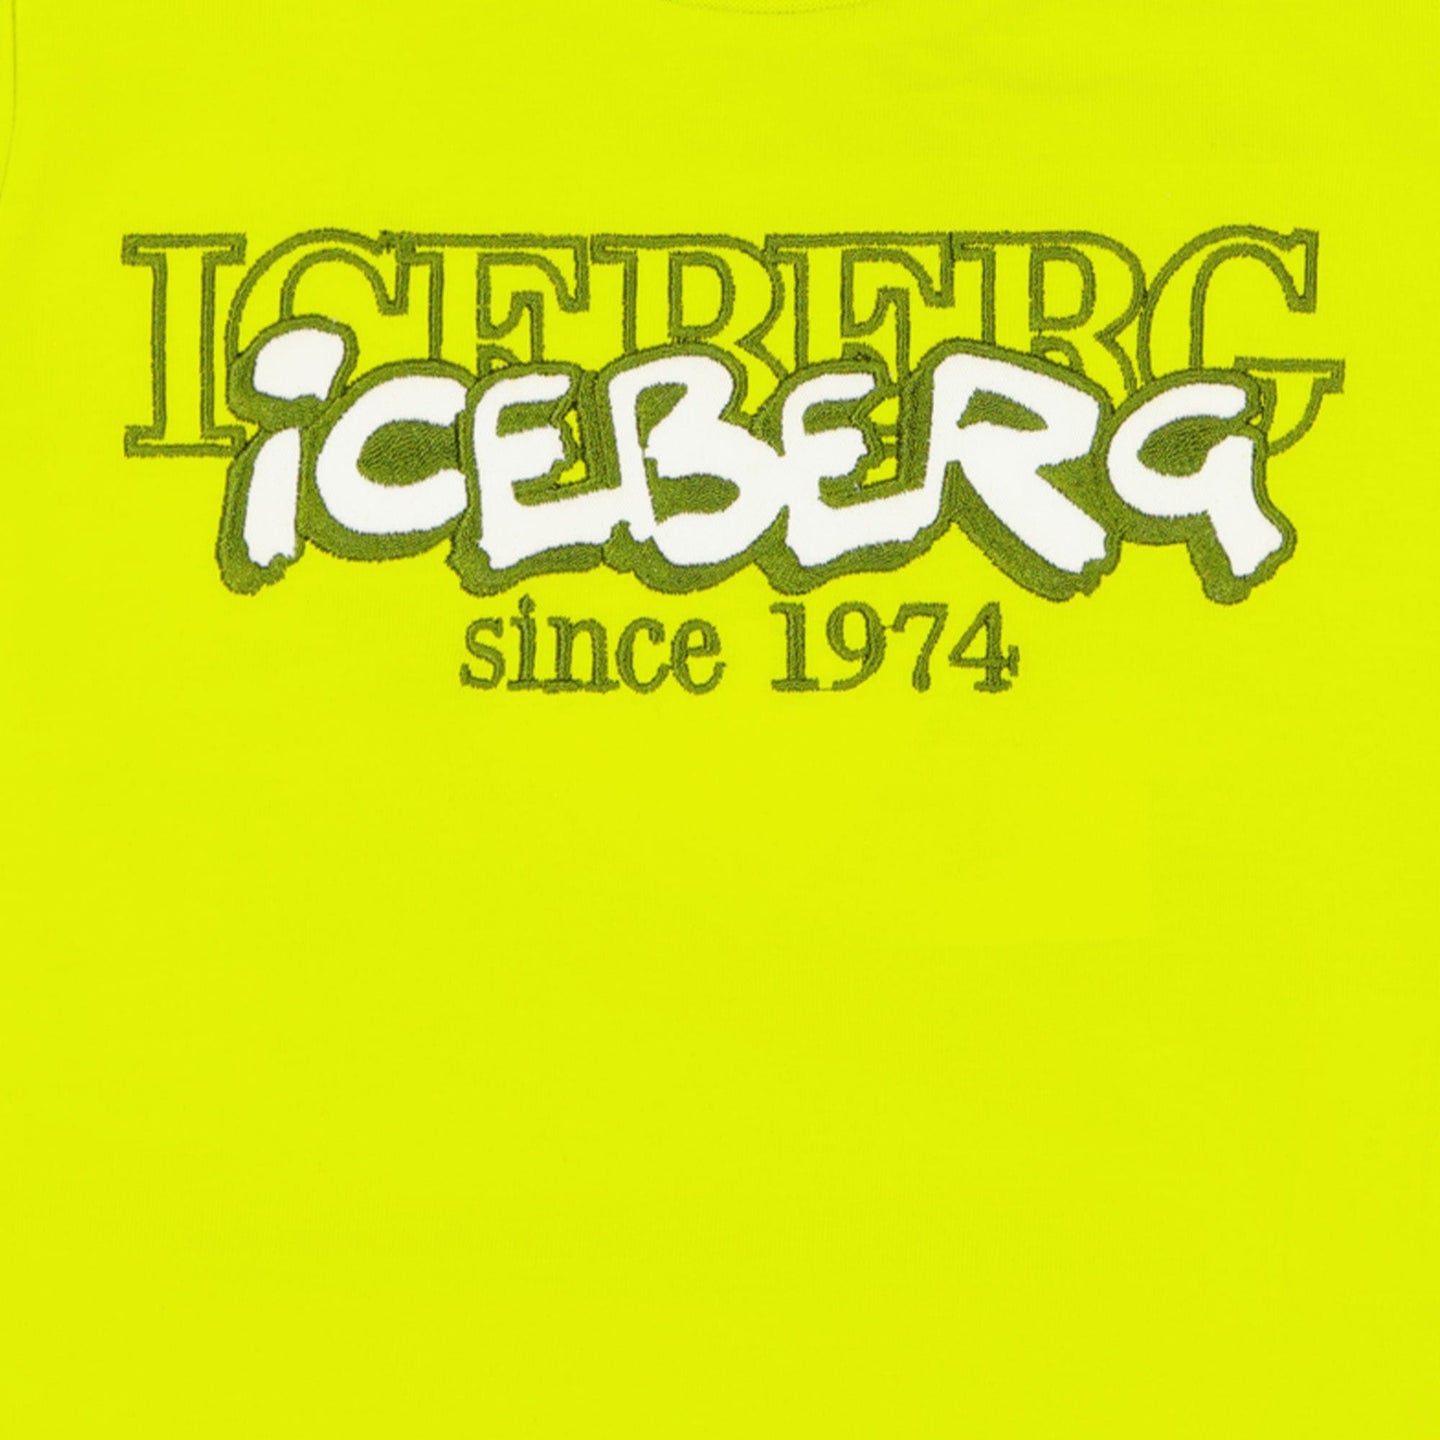 Iceberg Baby Jongens T-shirt Lime 6 mnd